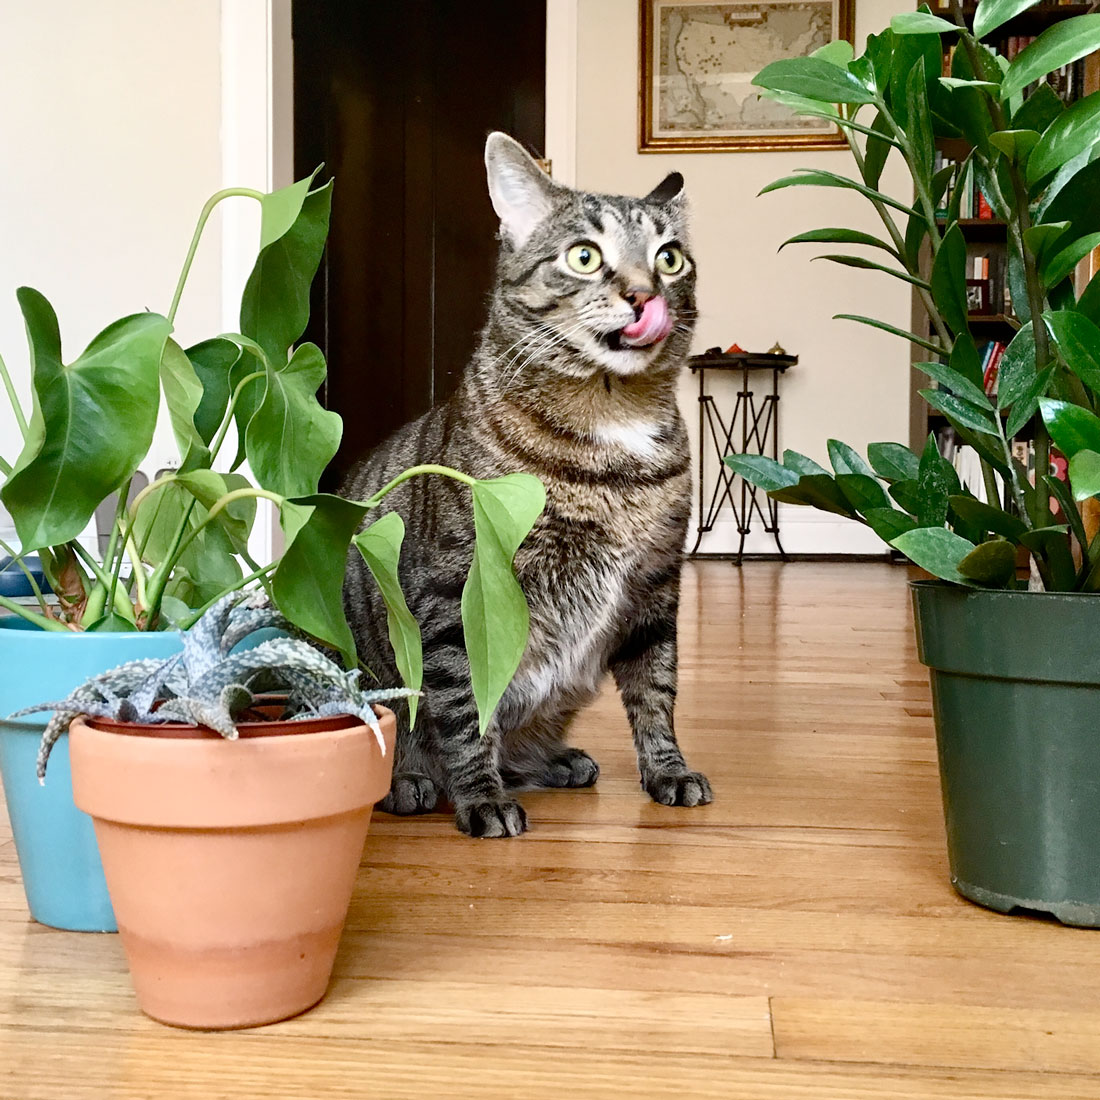 Rita, plant eating cat